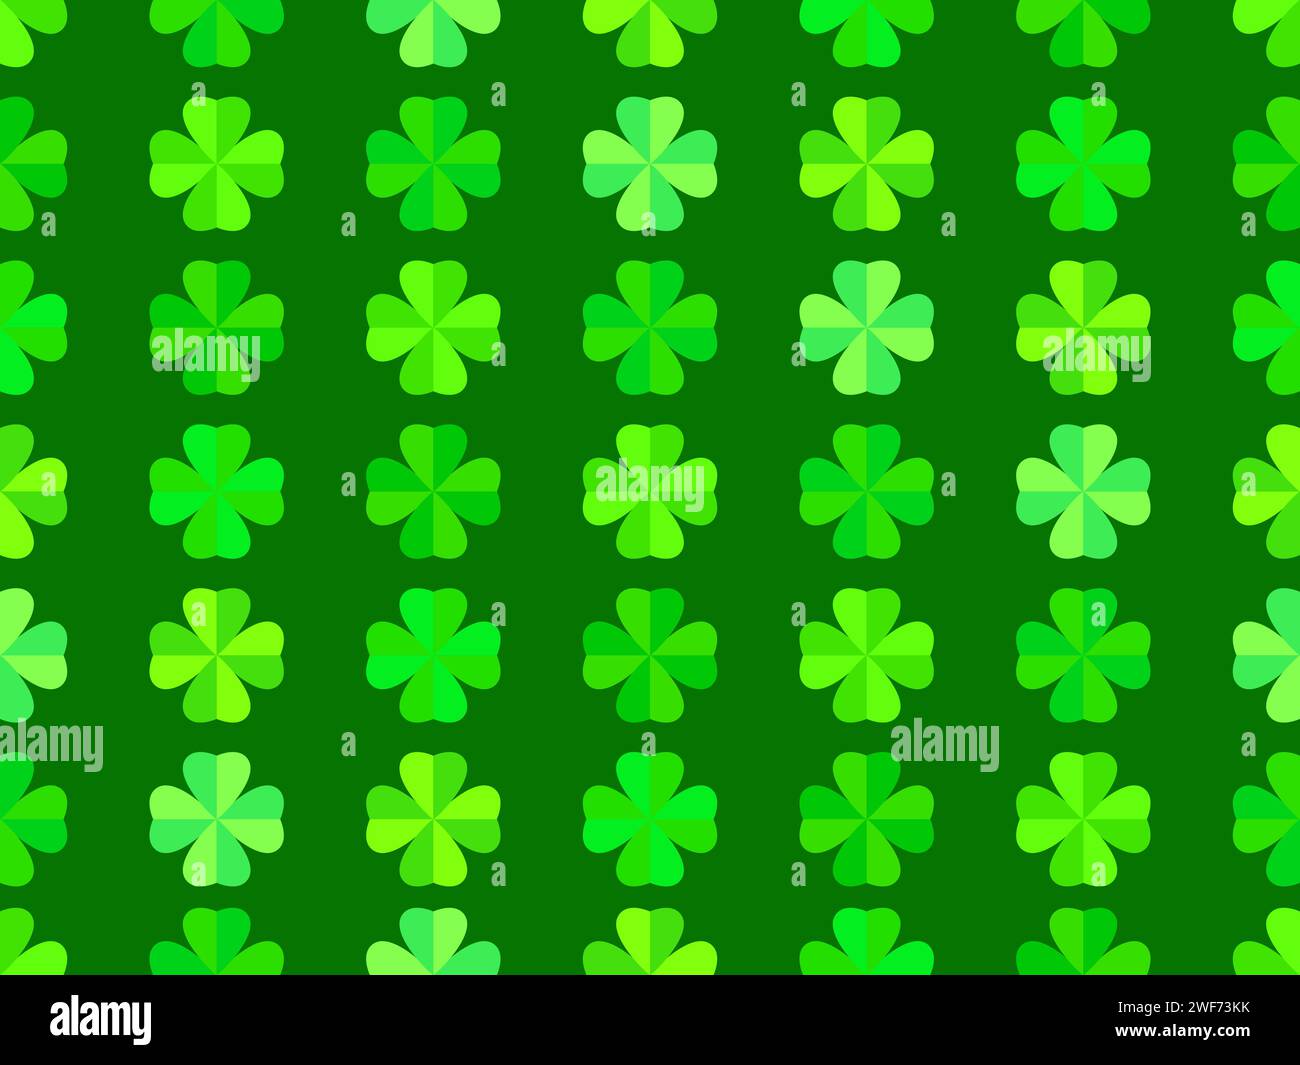 Motivo senza cuciture con trifoglio per St. Patrick's Day. Il trifoglio a quattro foglie è verde, un simbolo di buona fortuna. Background per prodotti promozionali, schede Illustrazione Vettoriale